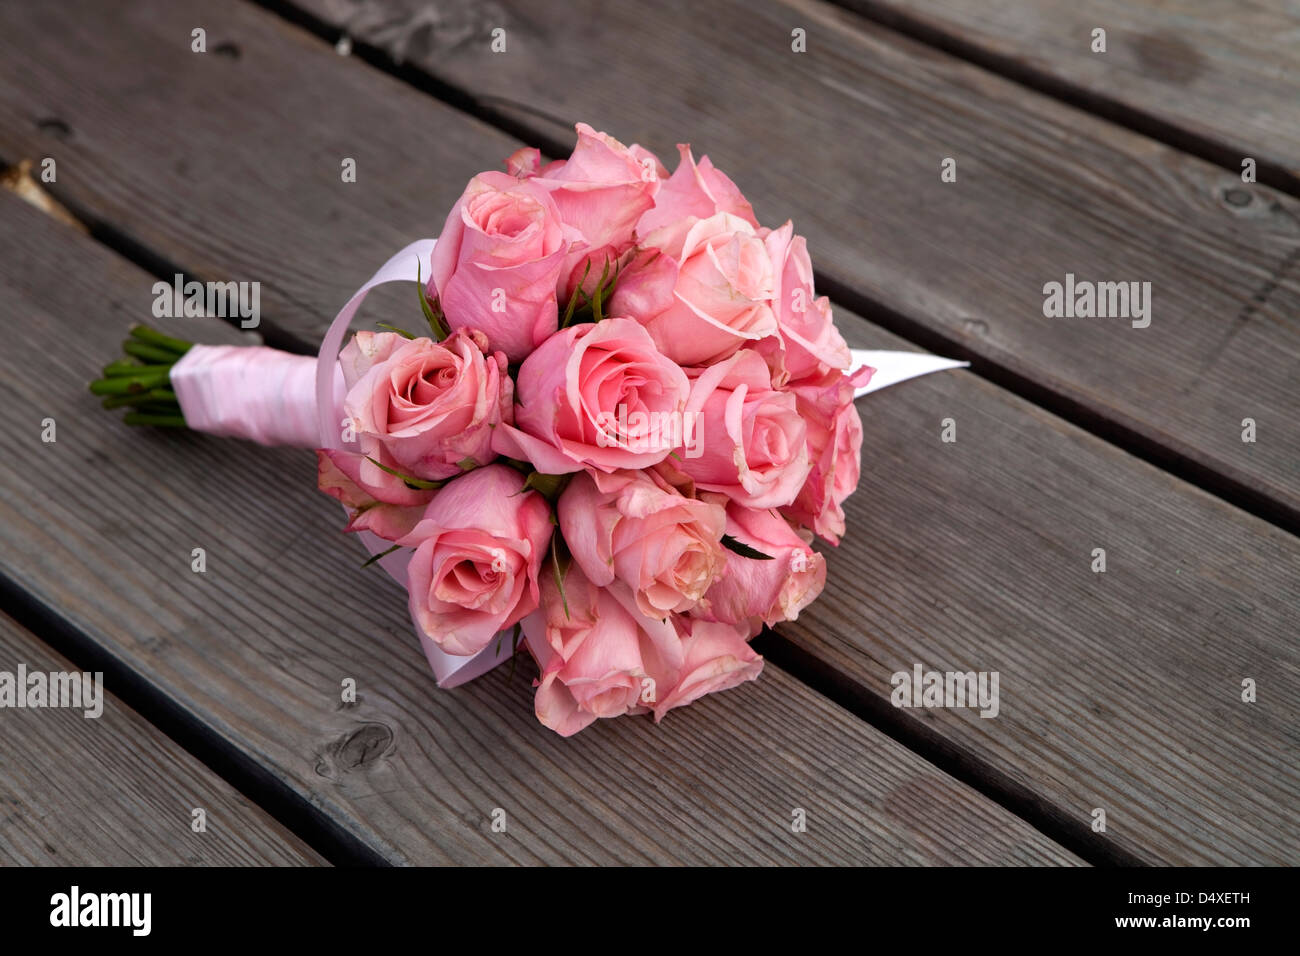 wedding flowers lying on wood floor Stock Photo